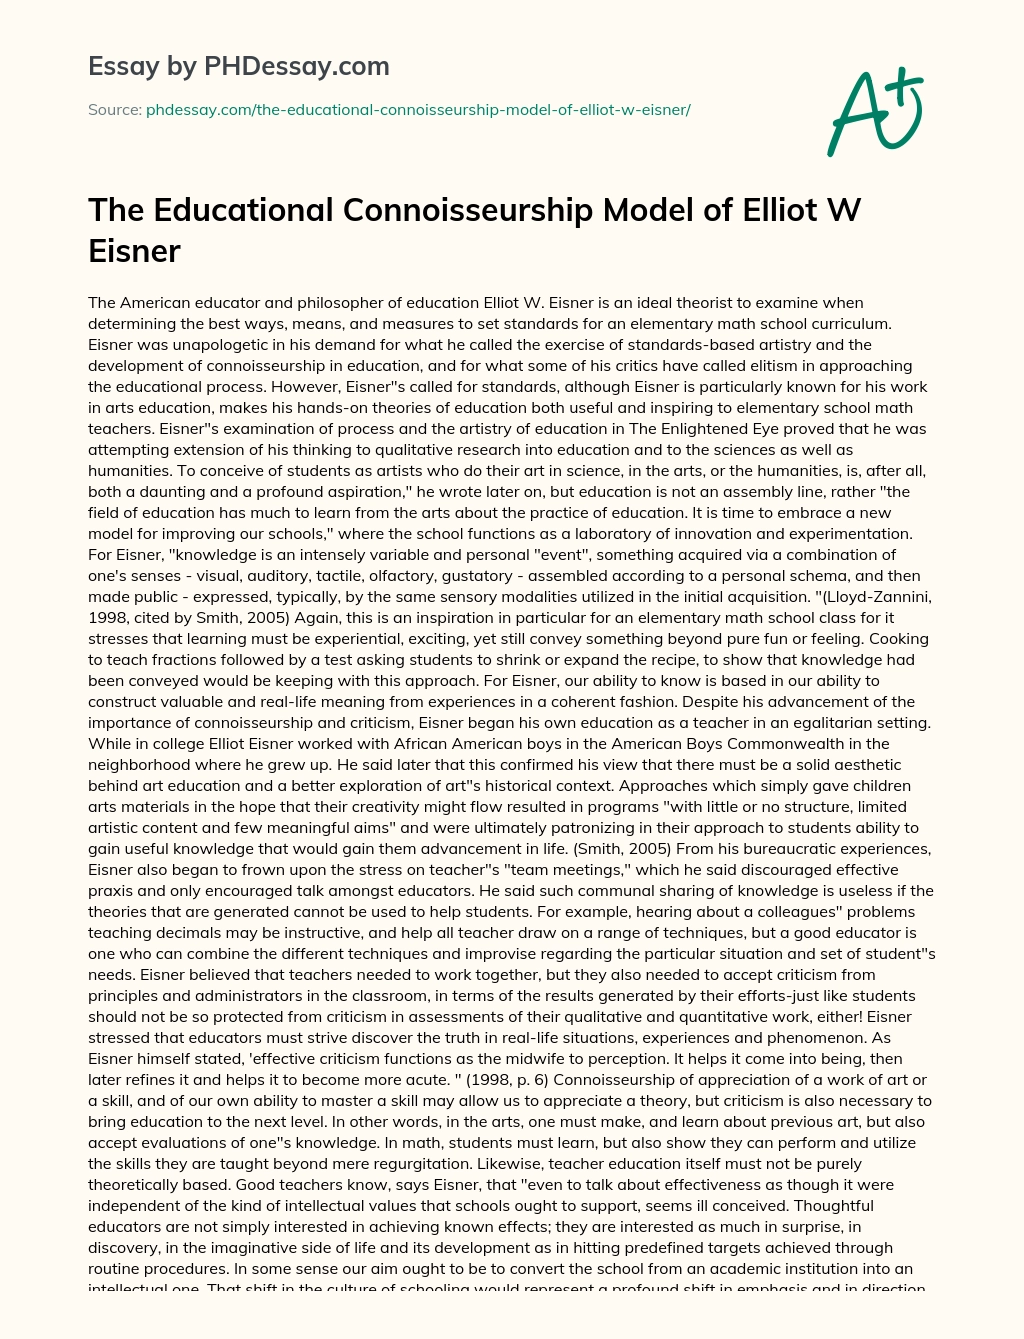 The Educational Connoisseurship Model of Elliot W Eisner essay